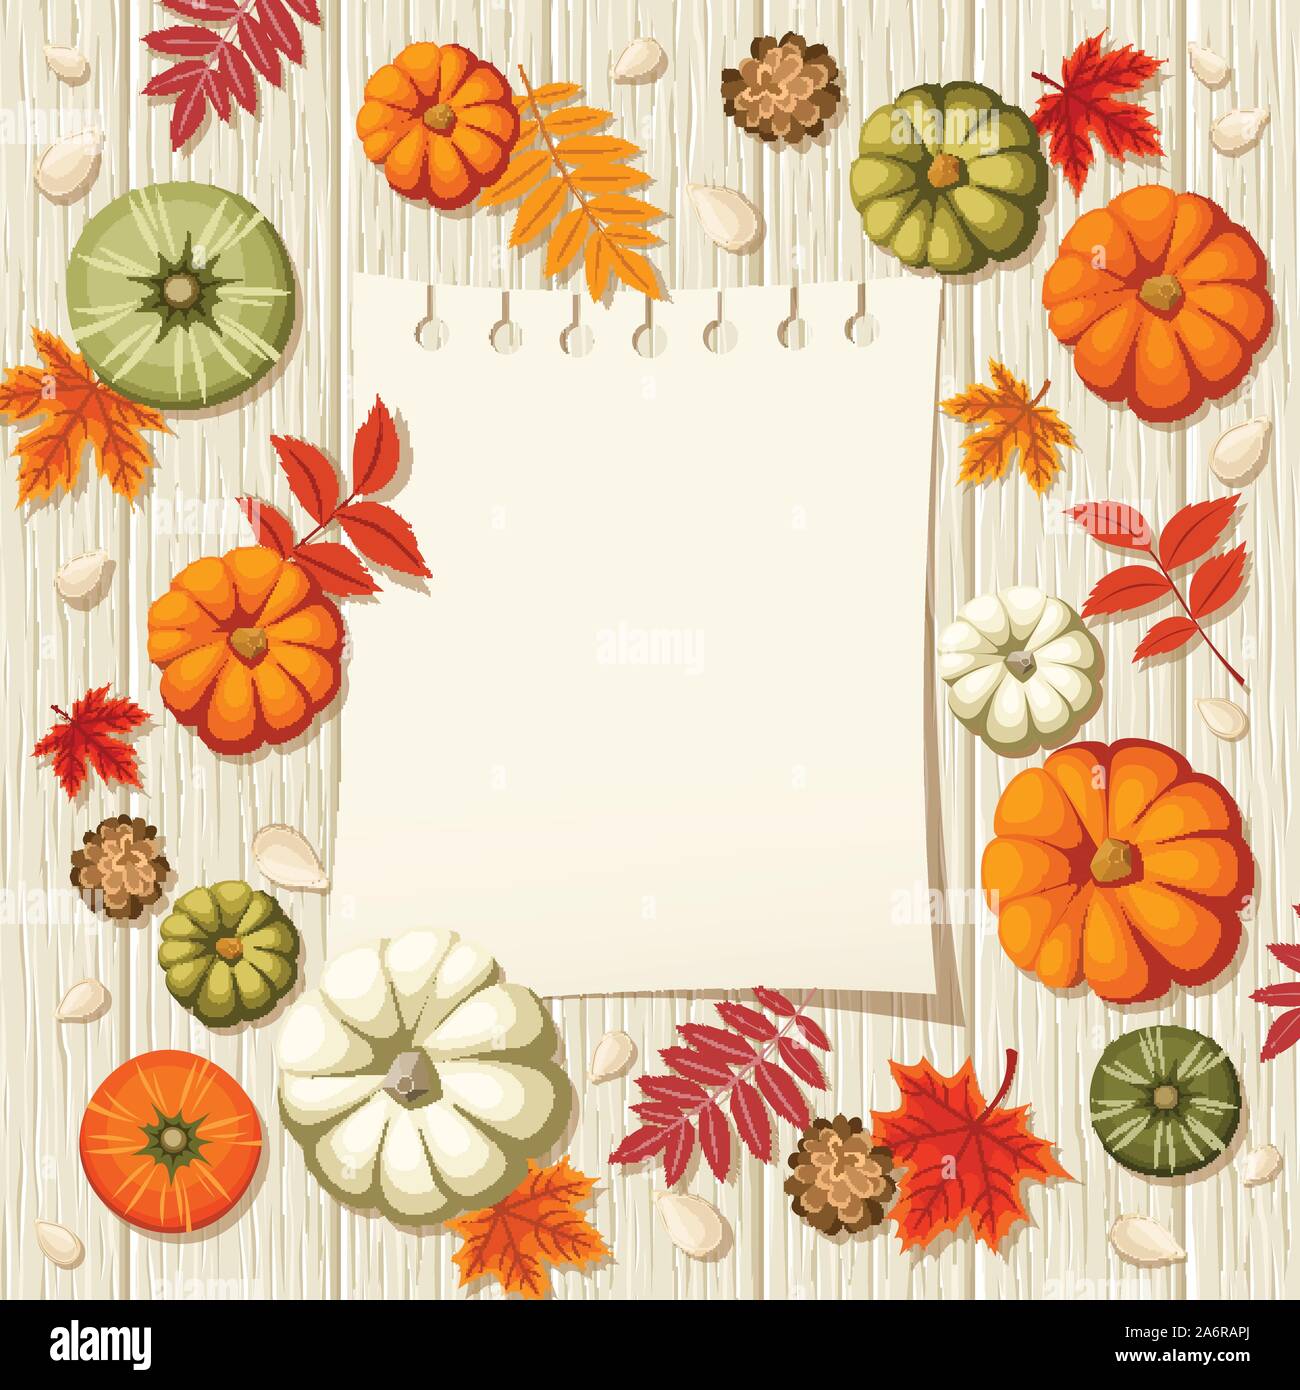 Coloridas calabazas, semillas, conos, hojas de otoño y una hoja de bloc de notas sobre un fondo de madera. Ilustración vectorial. Ilustración del Vector